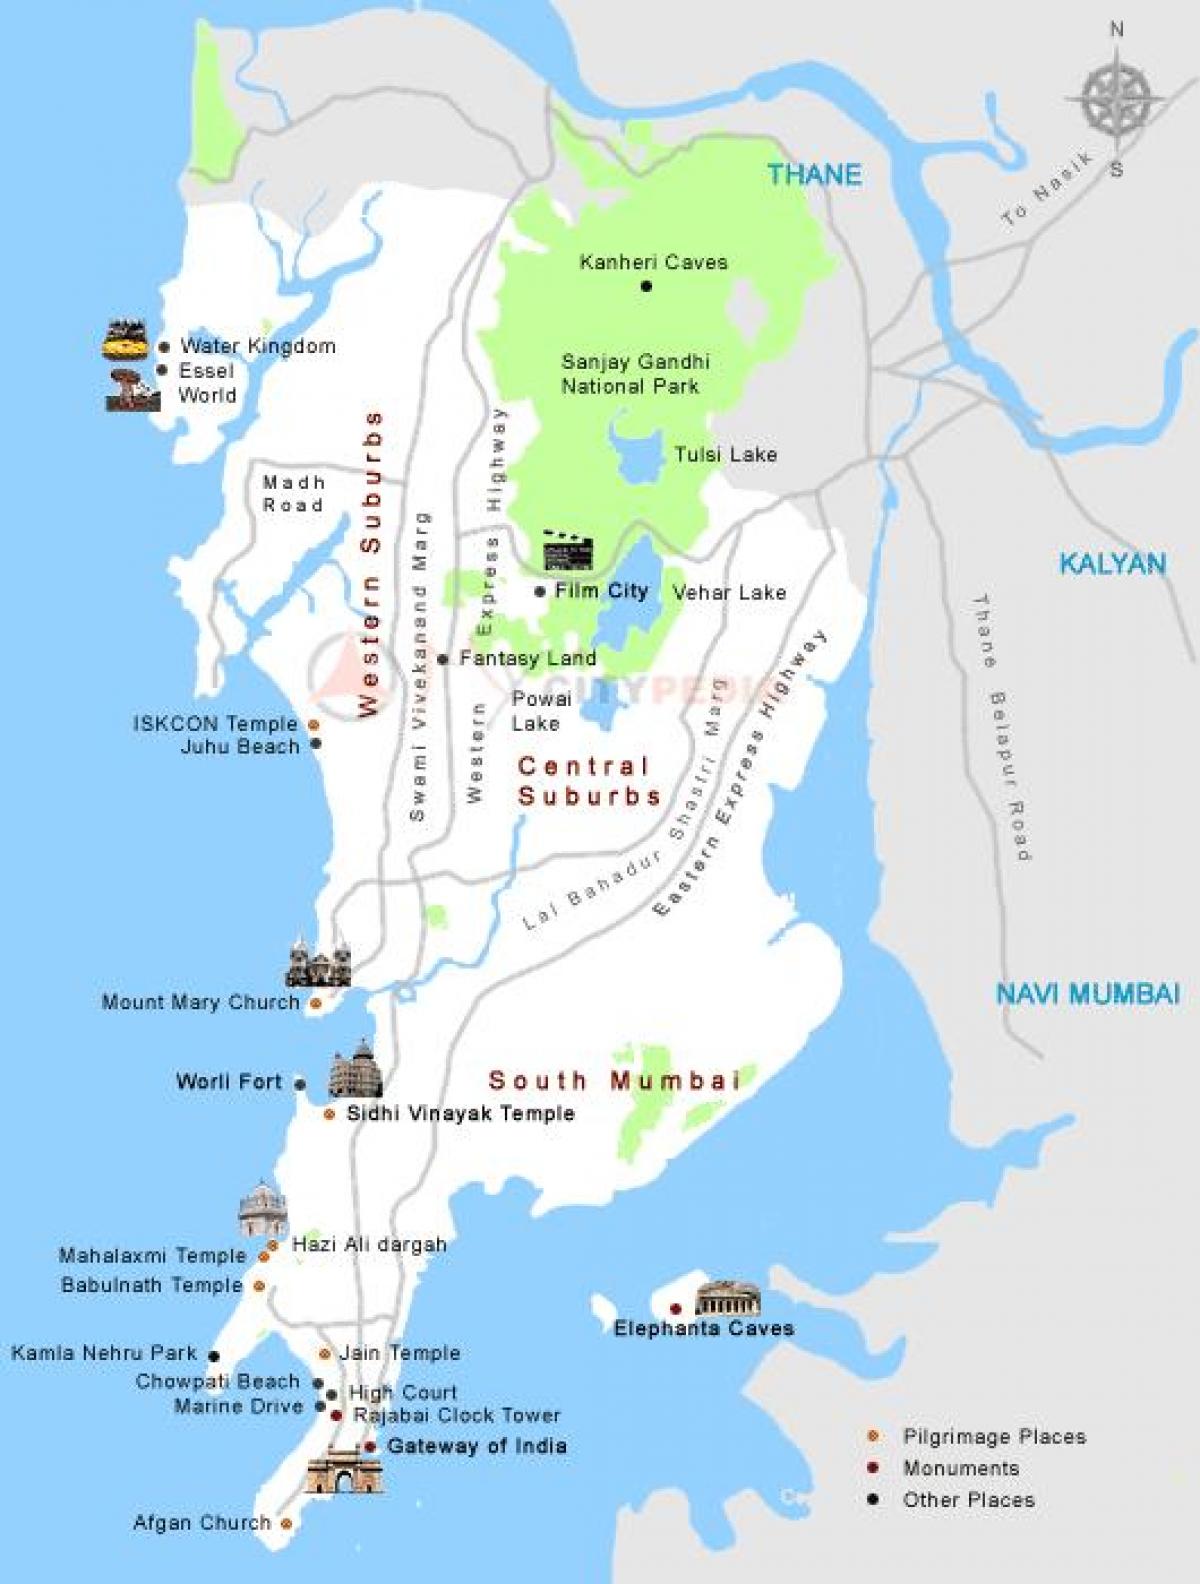 Mumbai darshan harita yerleri